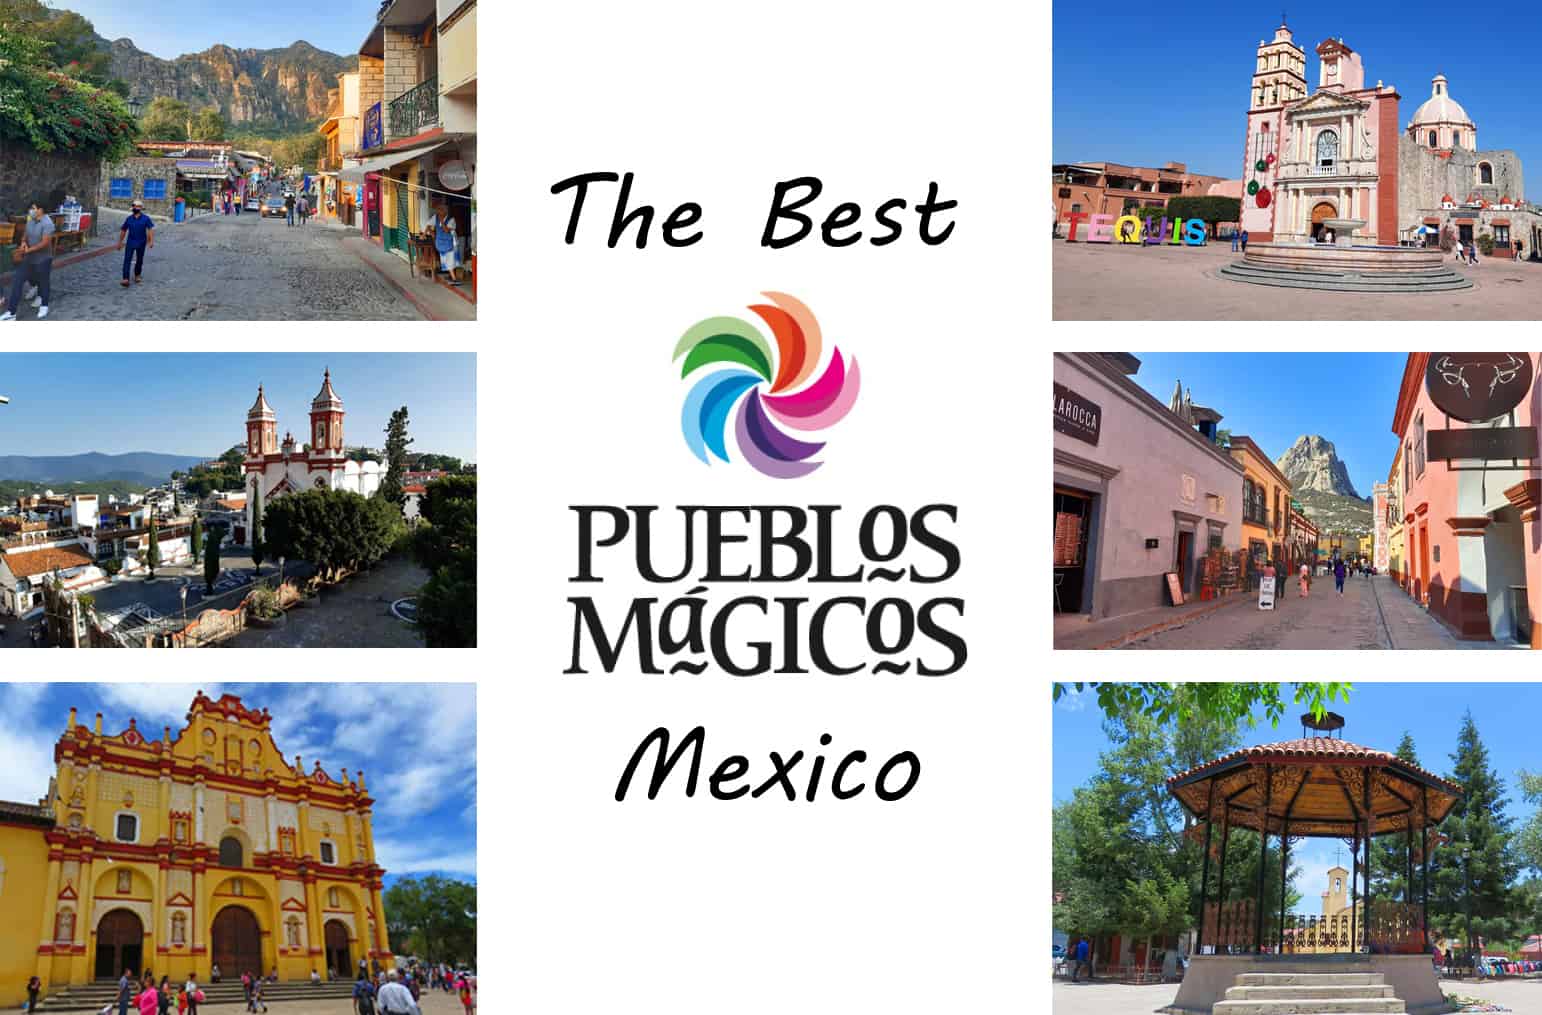 The Best Pueblos Magicos in Mexico